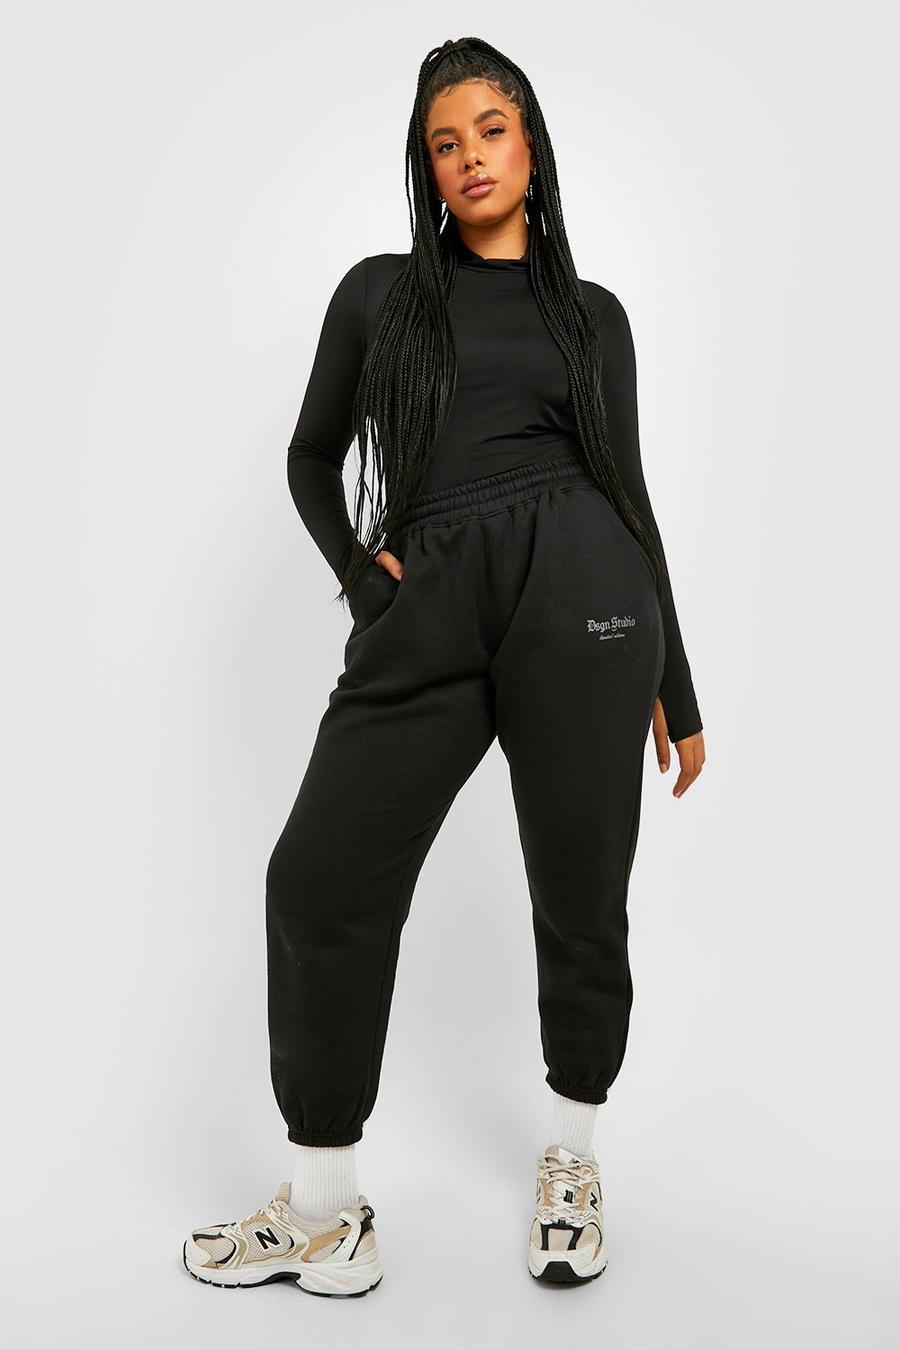 Pantalón deportivo Plus oversize con estampado reflectante, Black negro